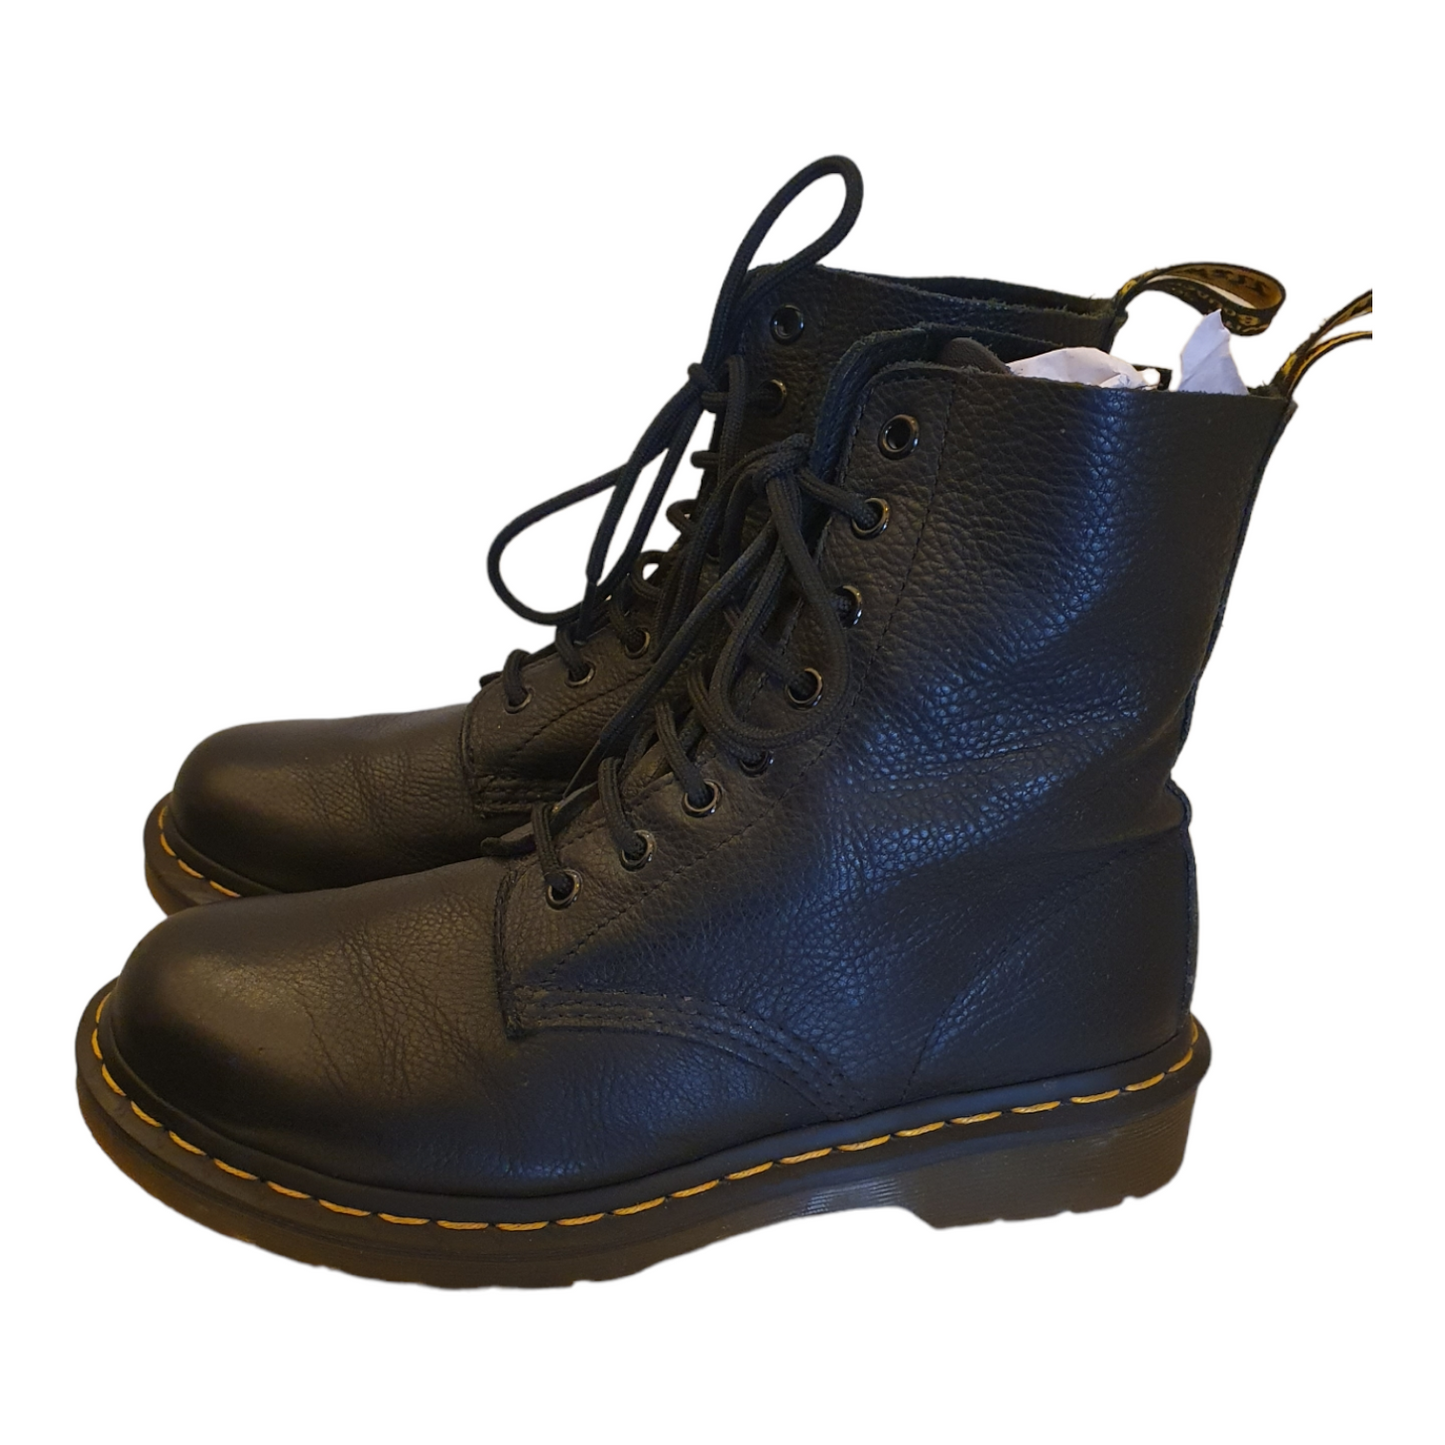 Dr Martens Black Pascal lace up boots, size 6